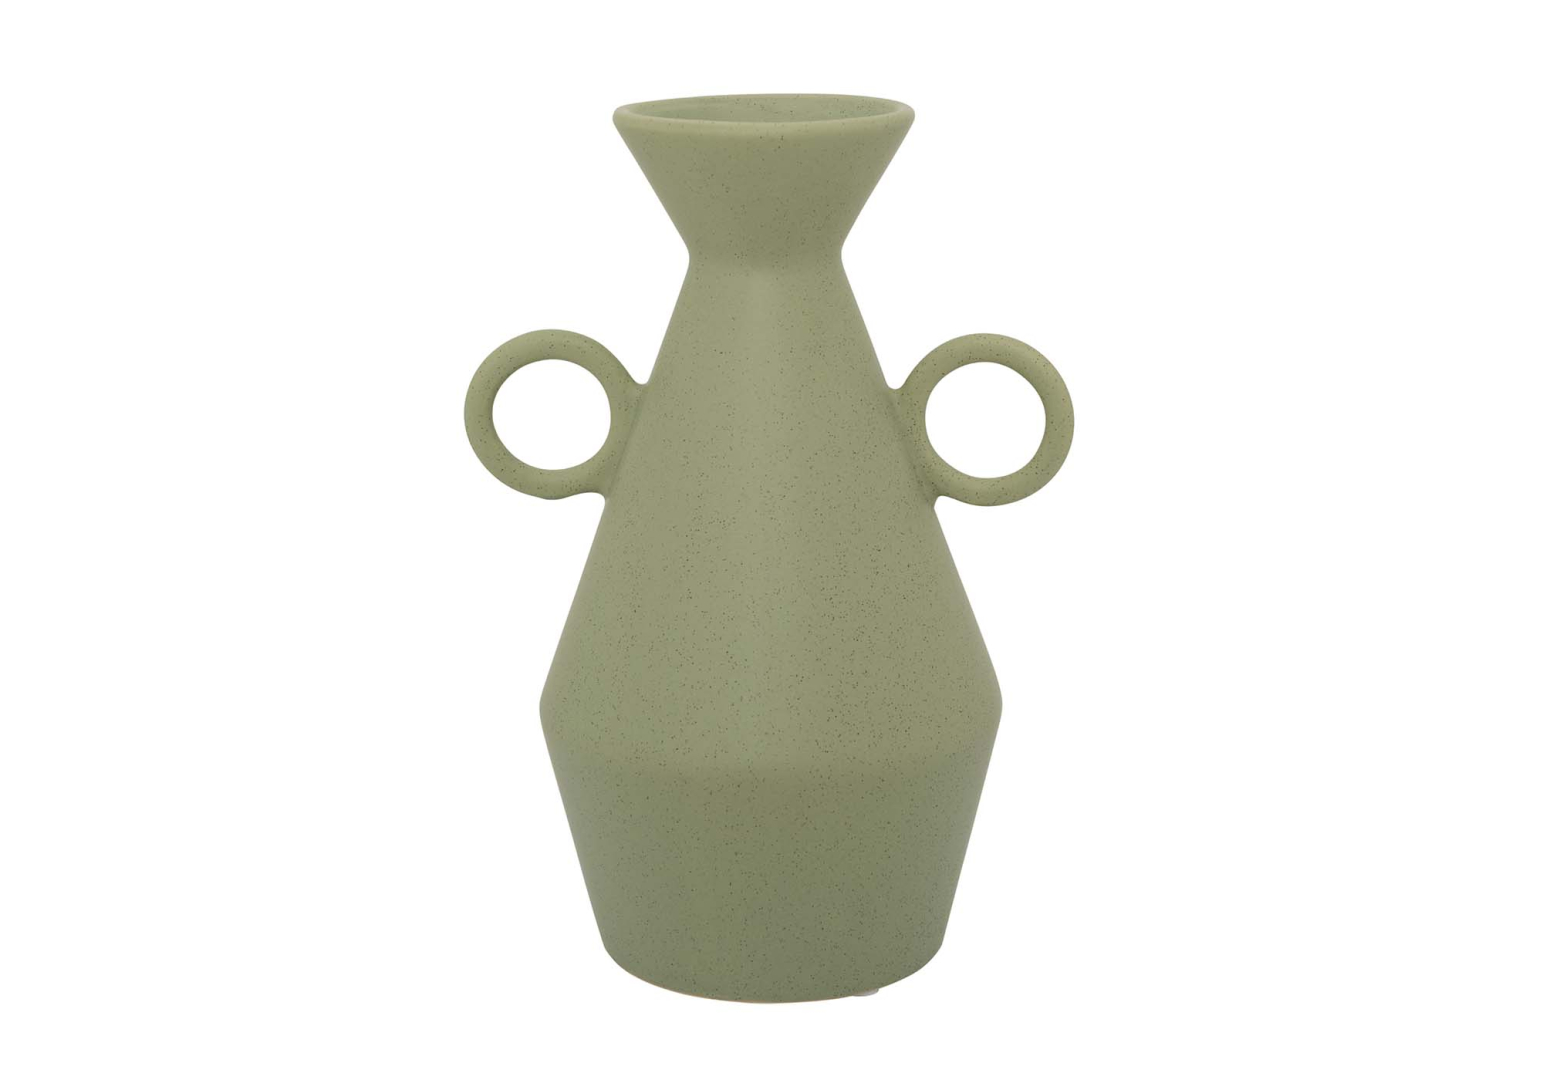 Vase Daily Pretty - URBAN NATURE CULTURE